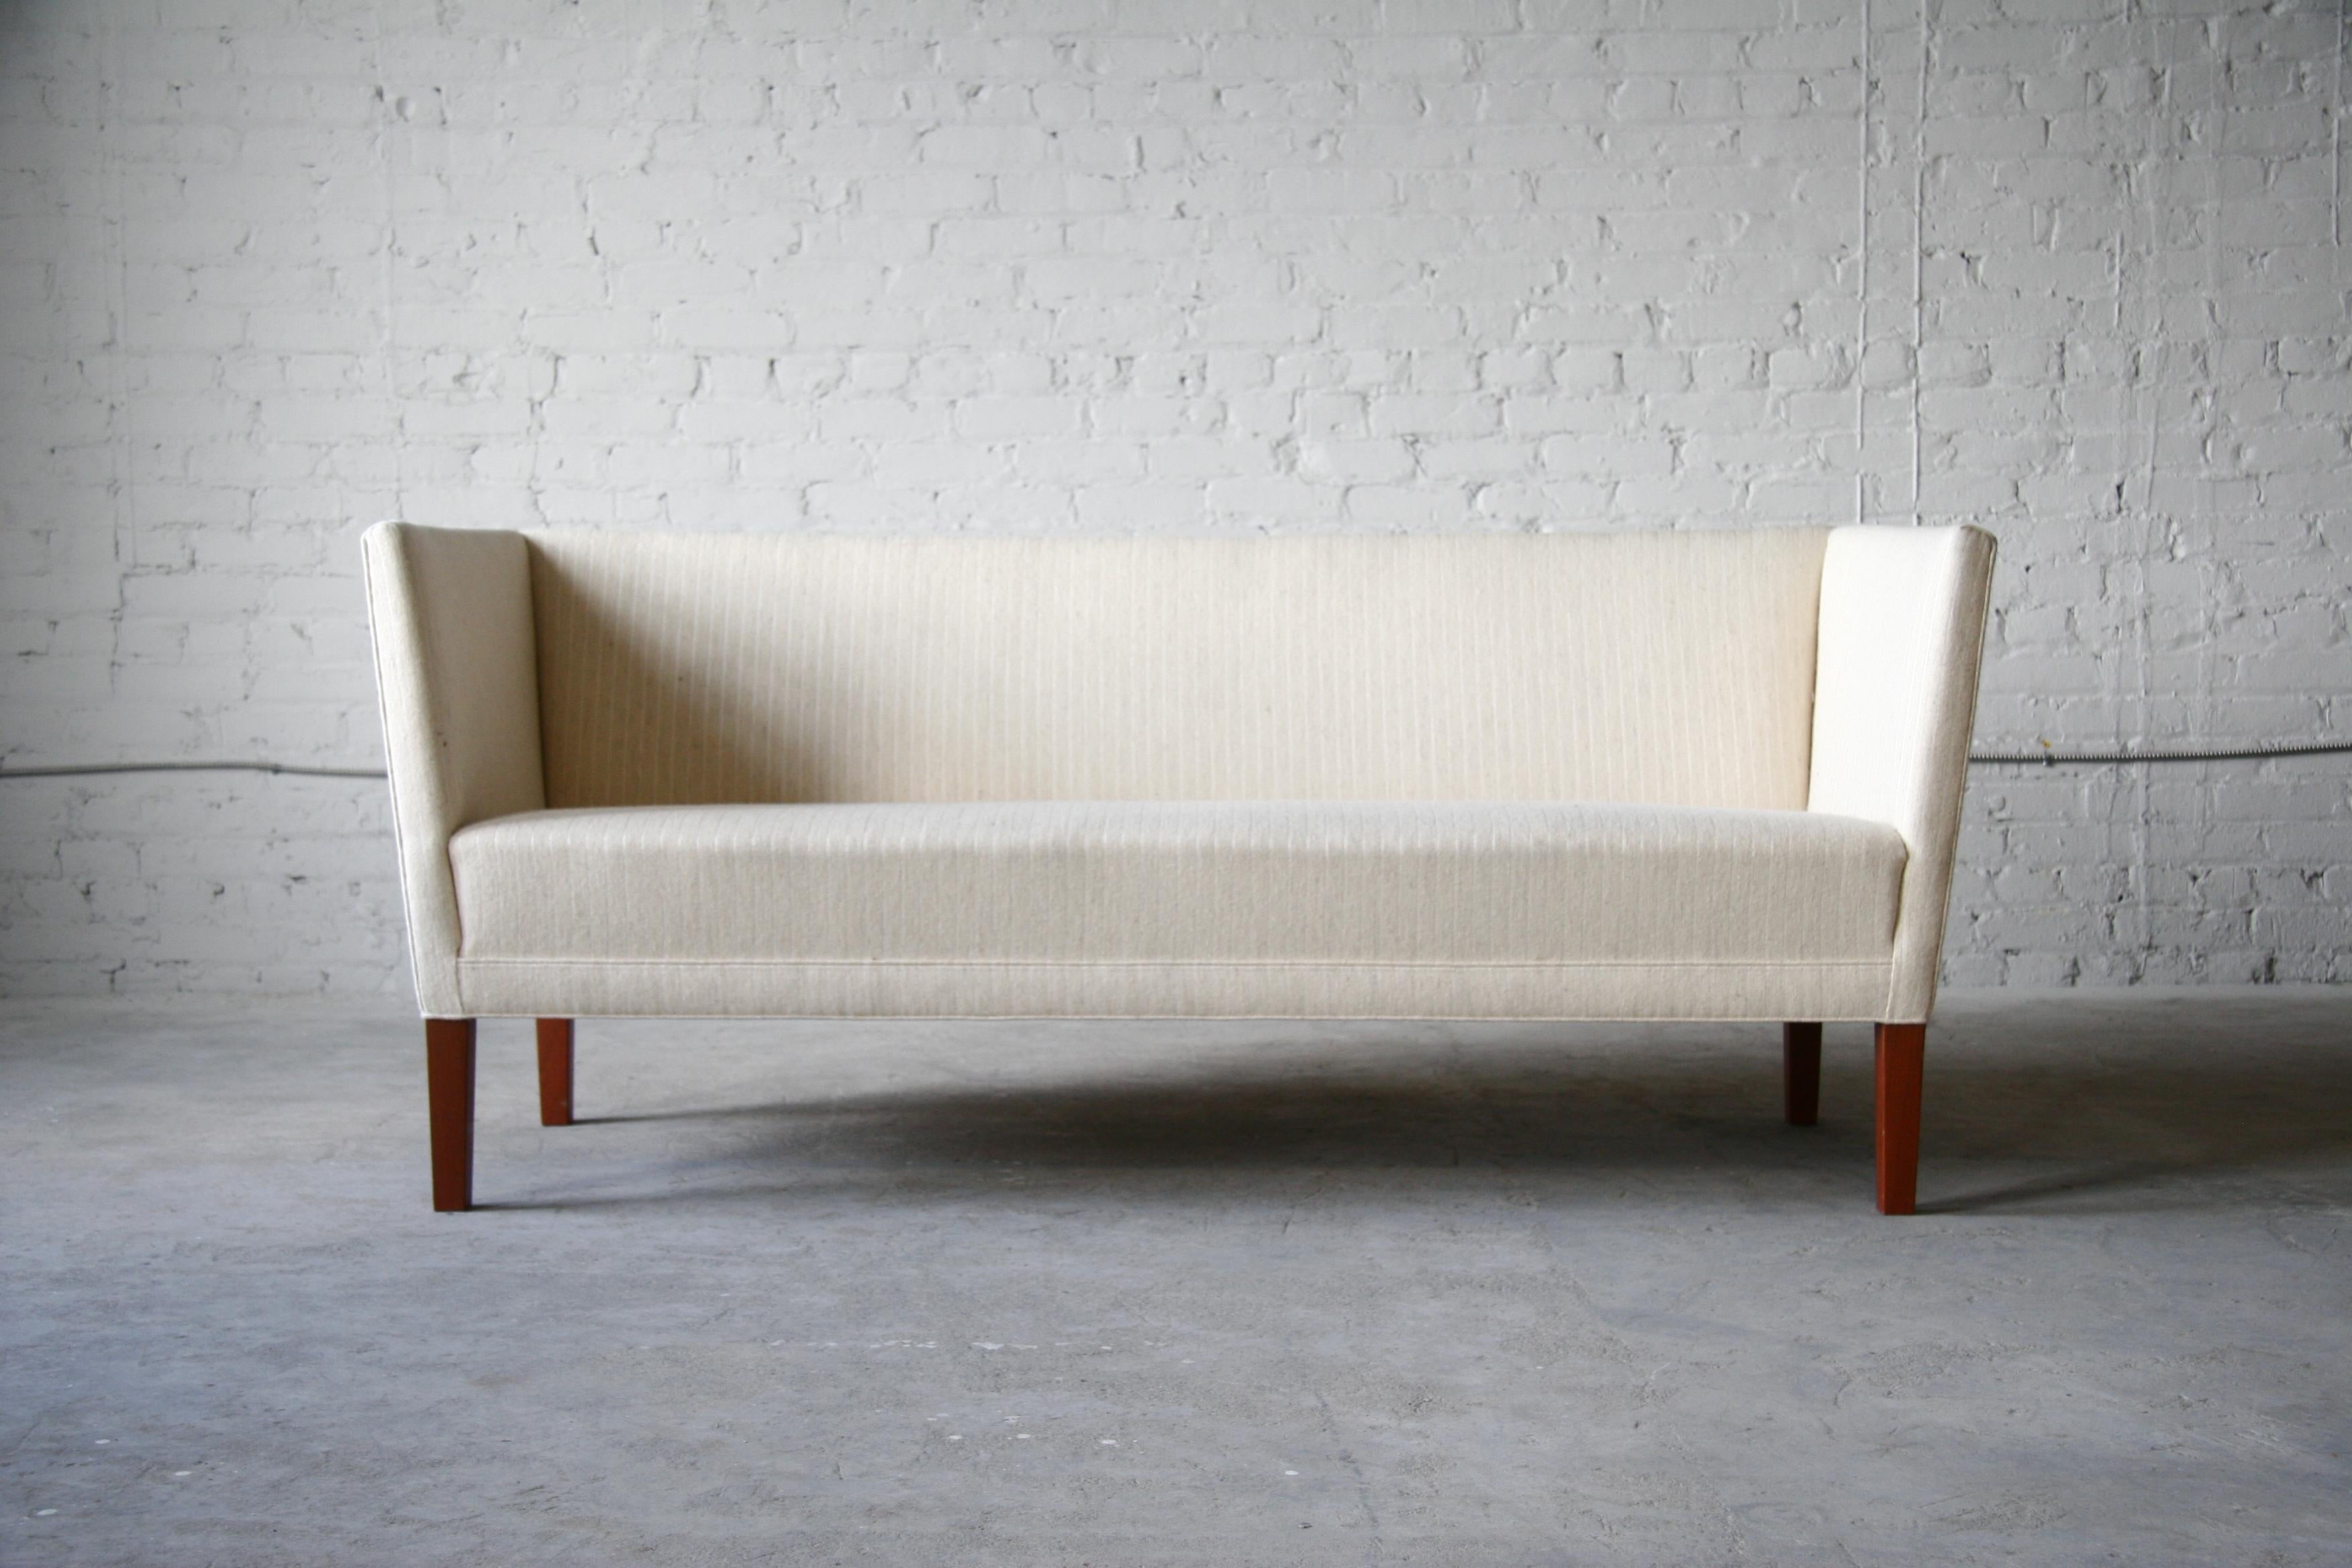 Canapé en acajou de Grete Jalk pour Johannes Hansen. Pour autant que nous le sachions, il s'agit du seul design que Jalk a créé pour Johannes Hansen. Il s'agit d'un canapé linéaire et minimaliste qui enveloppe celui qui s'y assoit. 

Le canapé